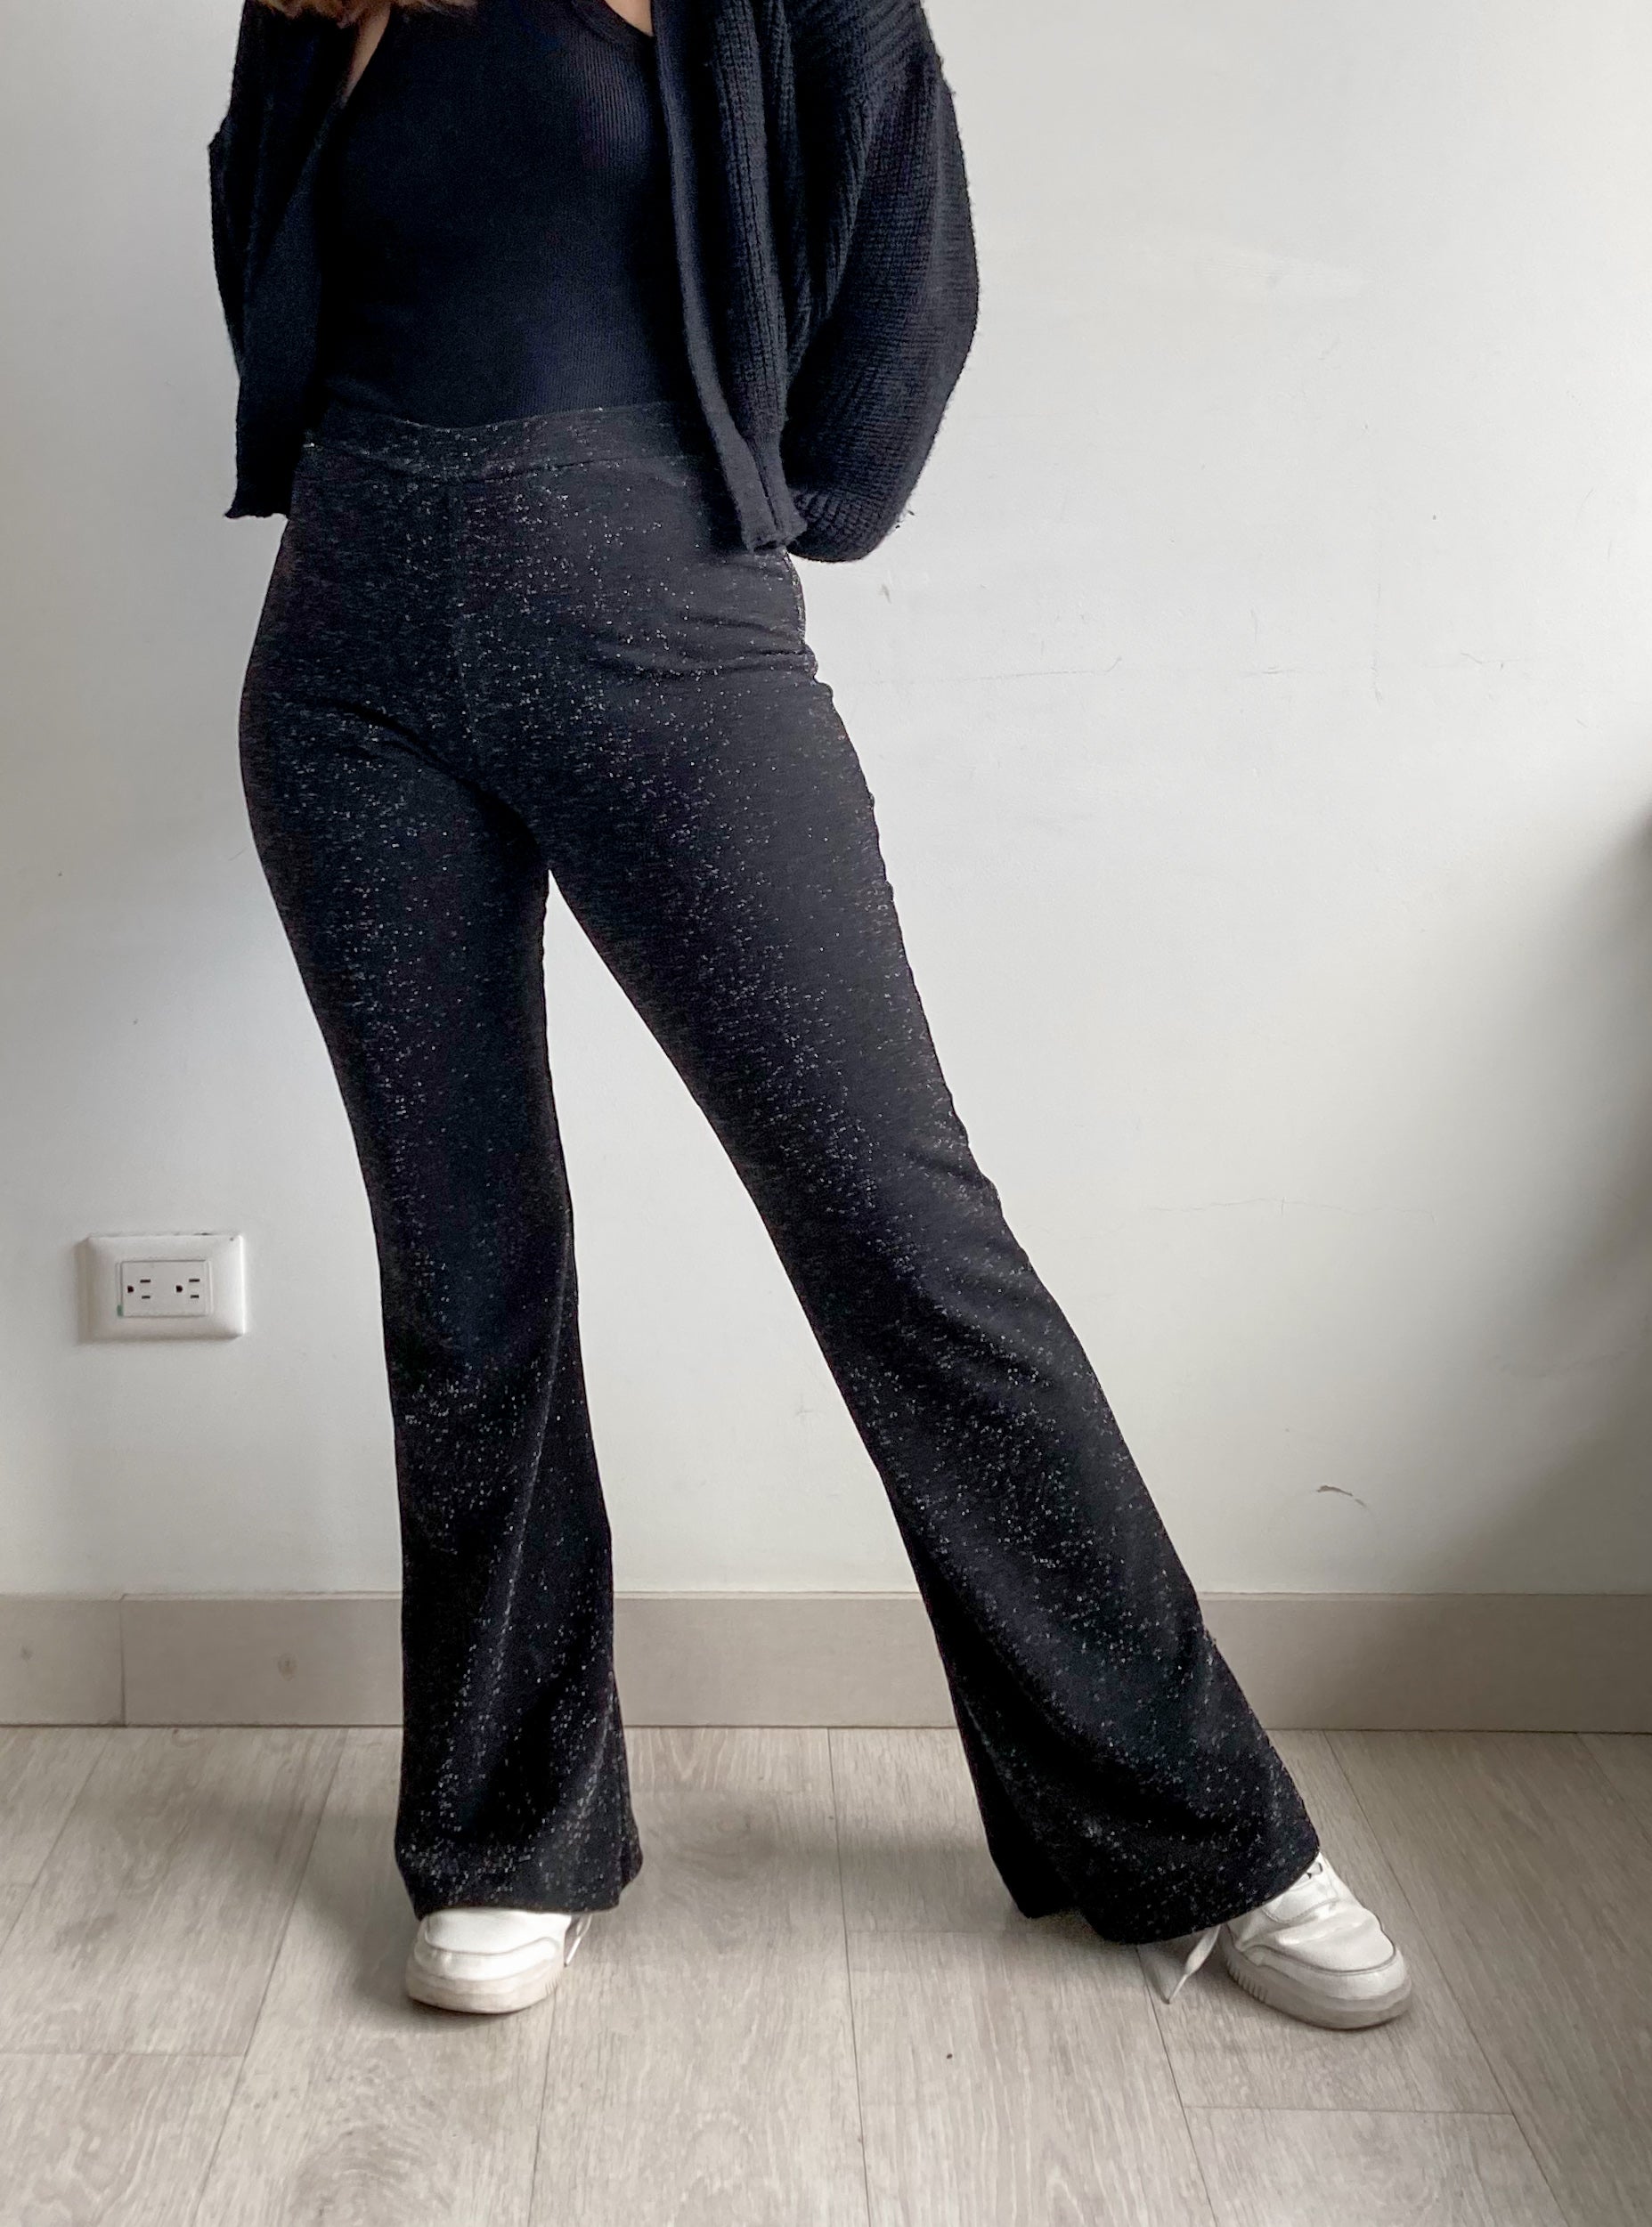 Pantalón bota campan brillante Ilka, en tela negra elástica que se ajusta perfecto al cuerpo. 100% Colombiano